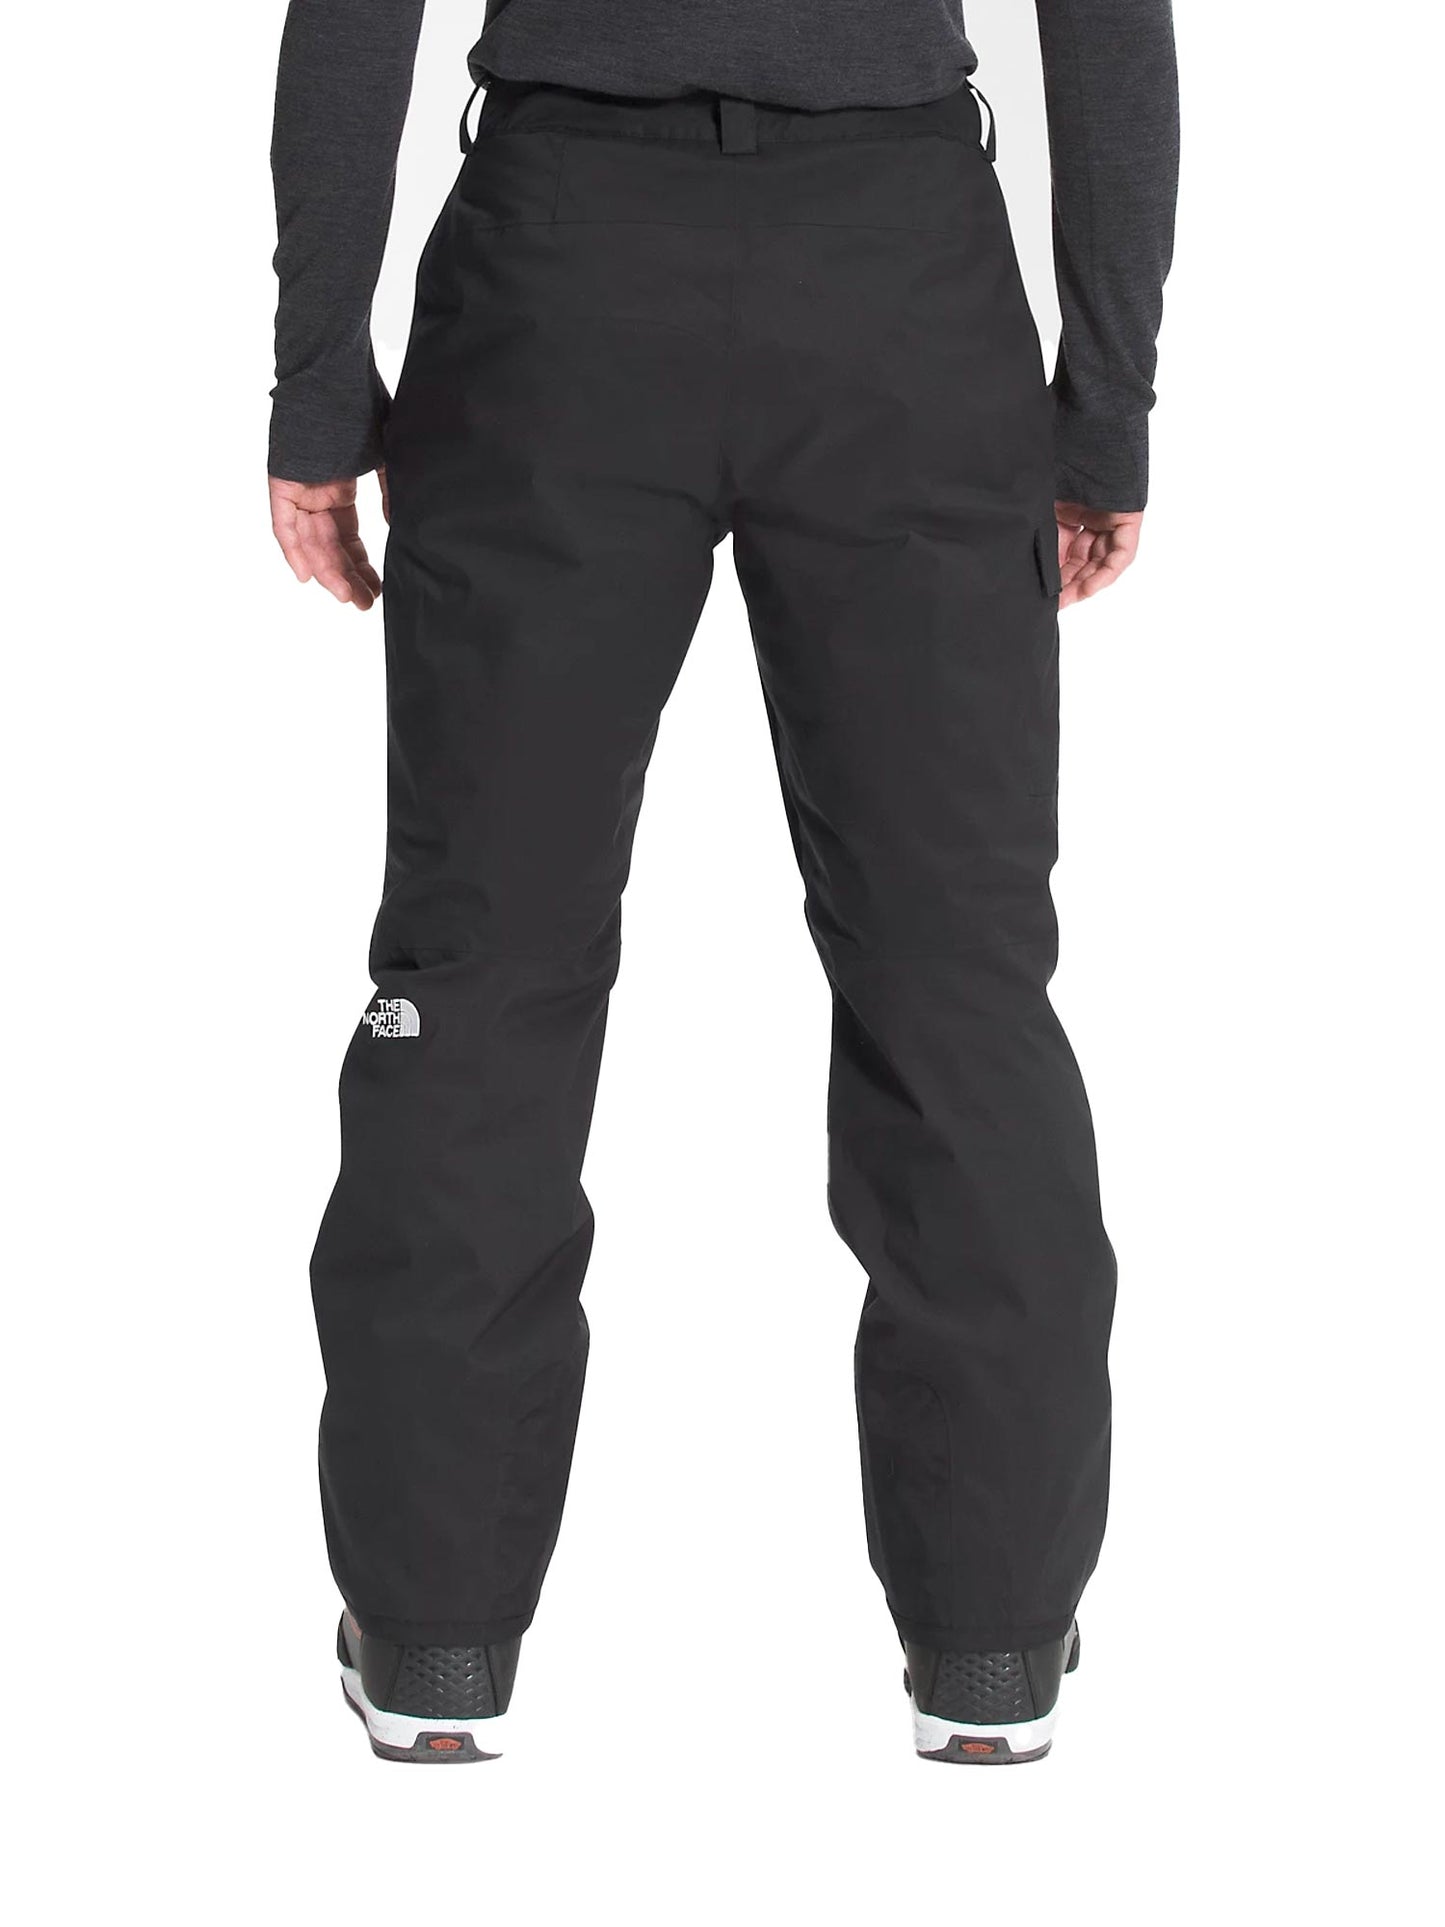 men's The North Face ski pants, black